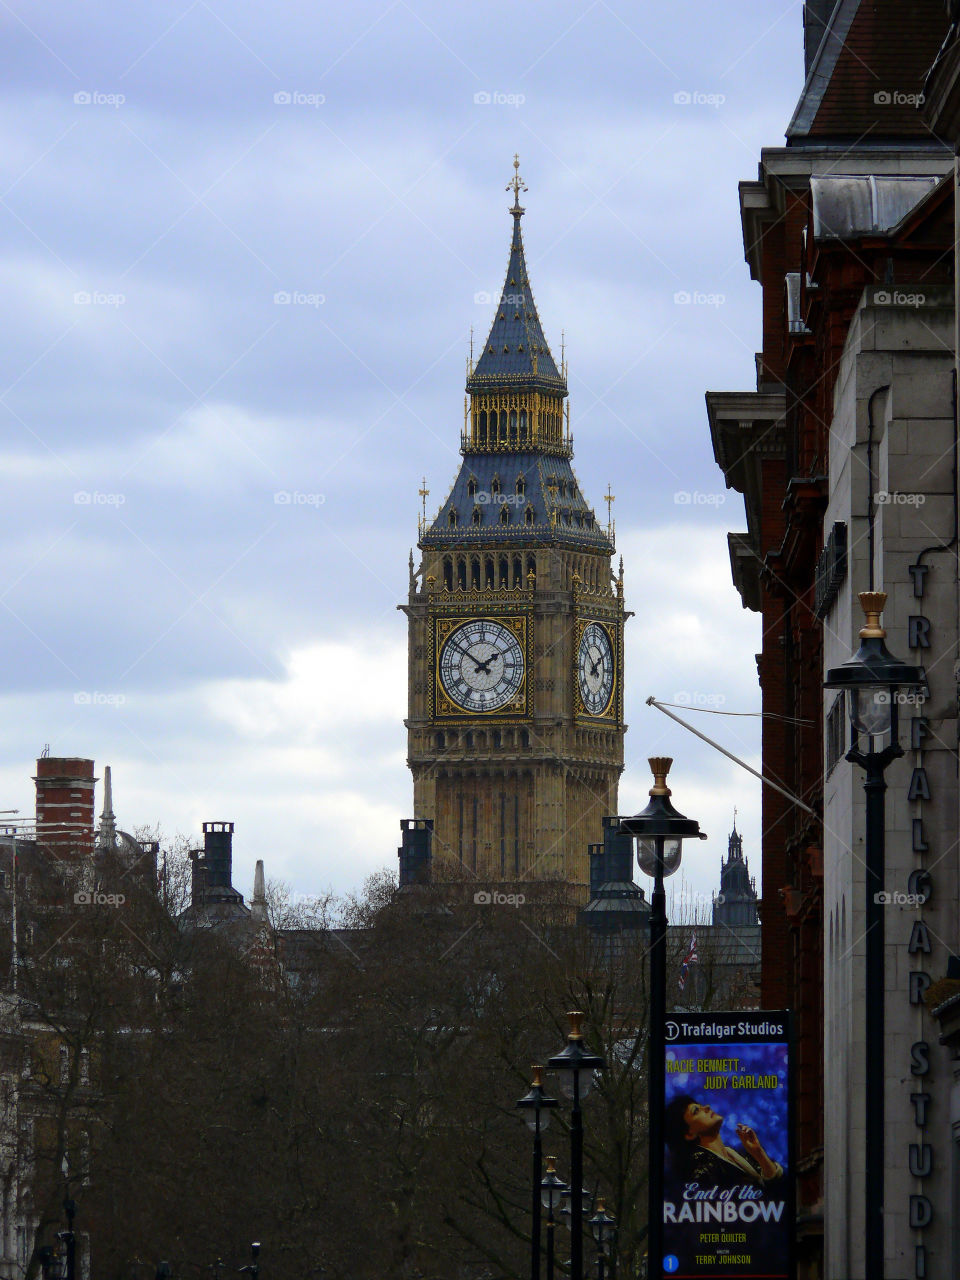 Big Ben in London, UK.